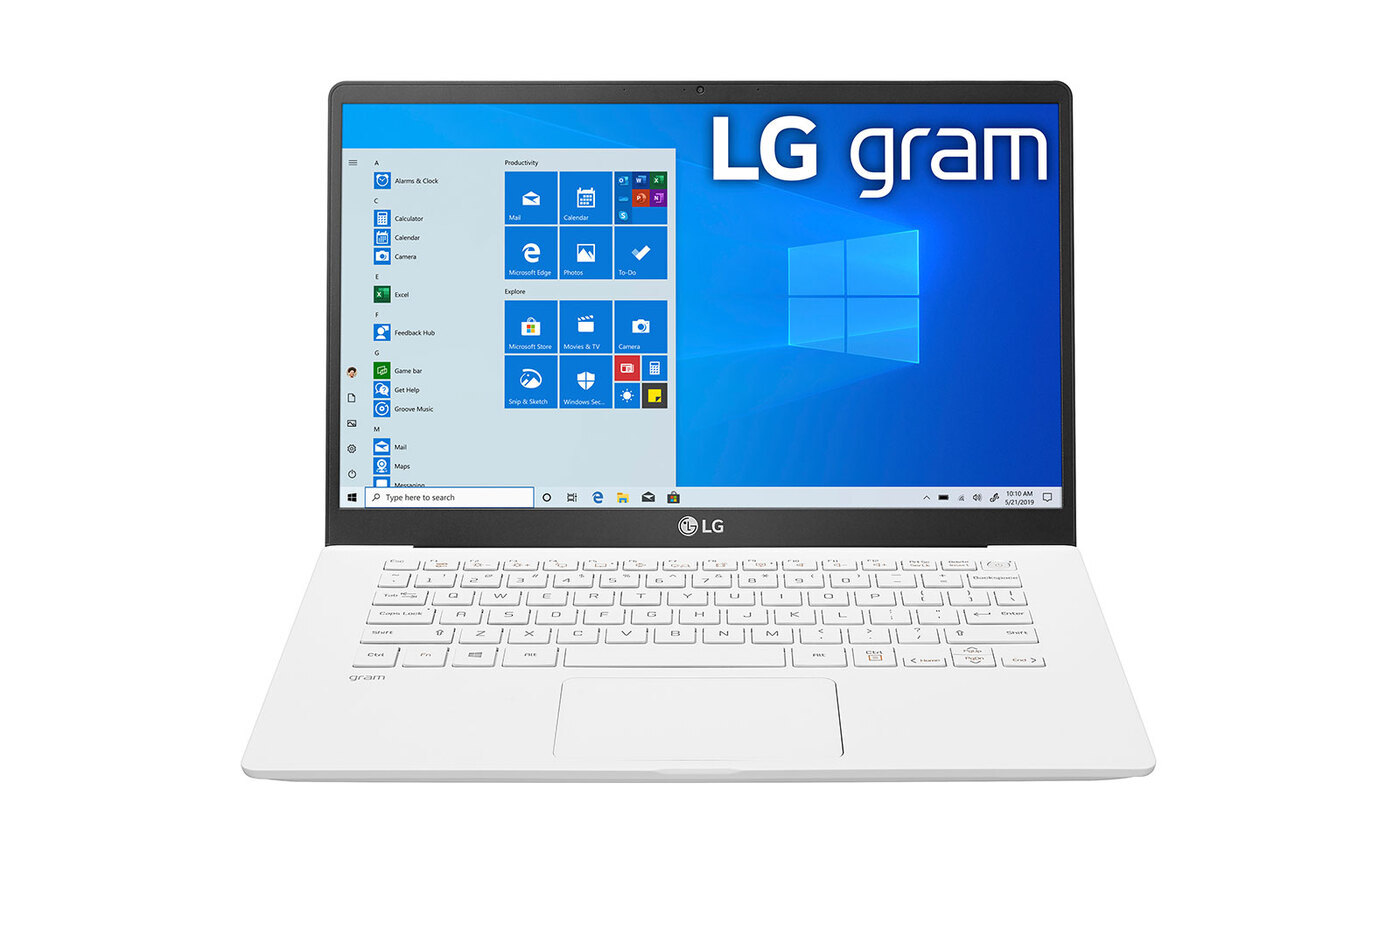 Купить Ноутбук Lg Gram 15